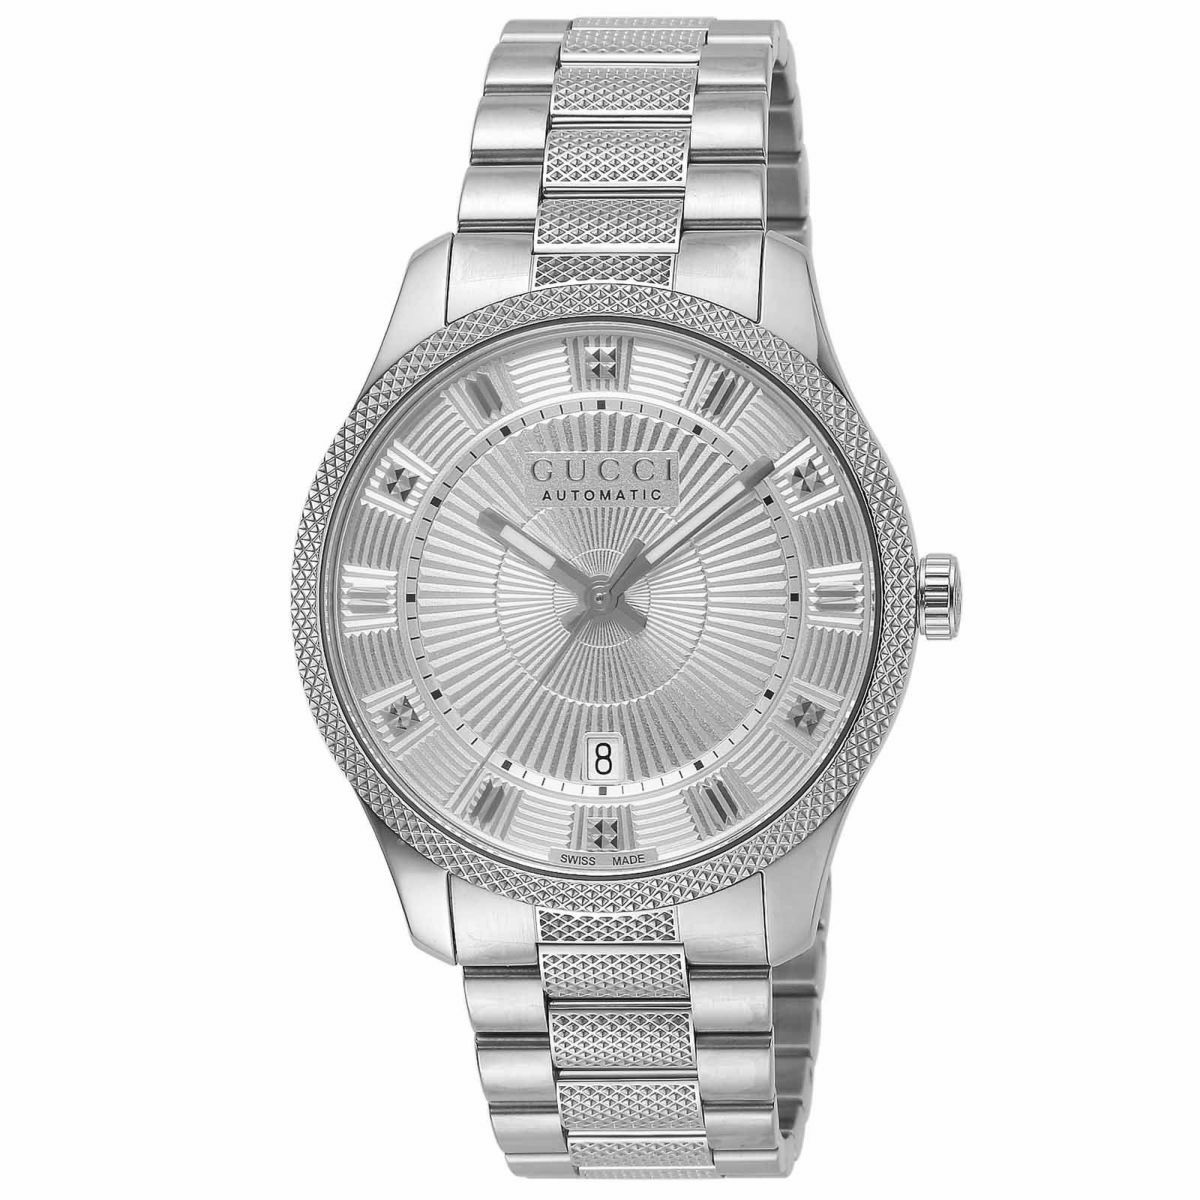 エリクス / YA126342 |エリクス | 海外ブランド腕時計通販 U-collection